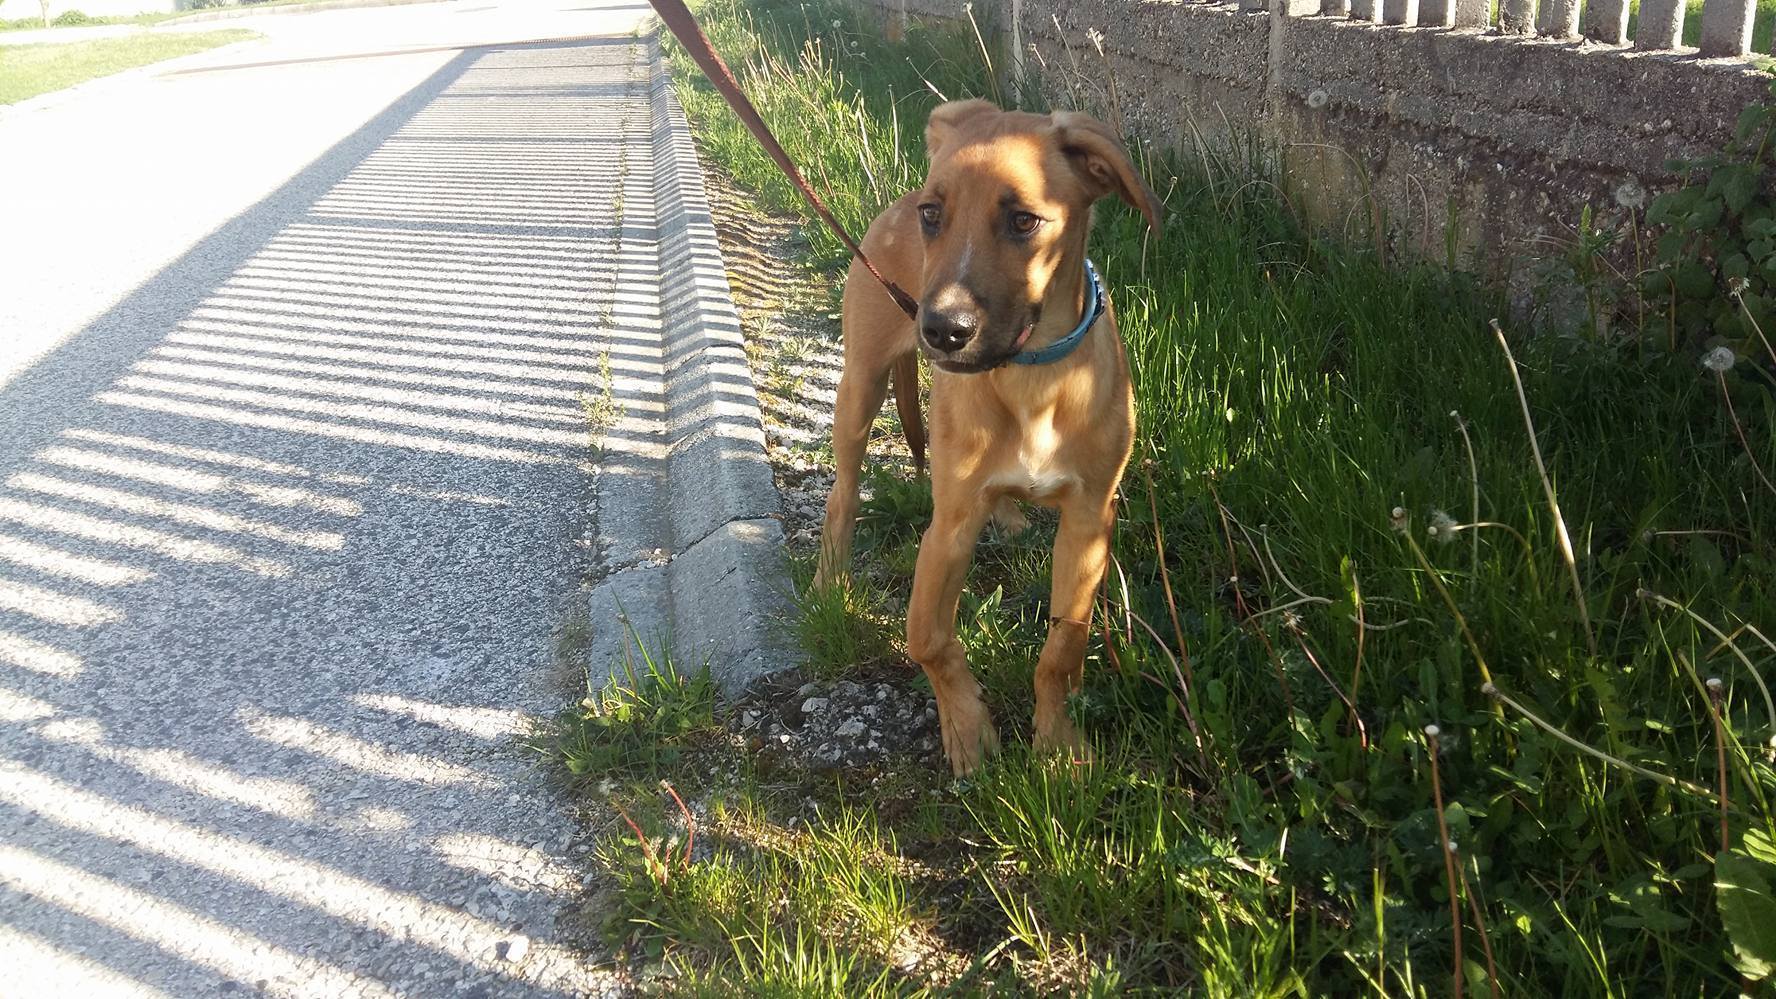 Chivas, a mentett kutyus lába azonnali műtétre szorult